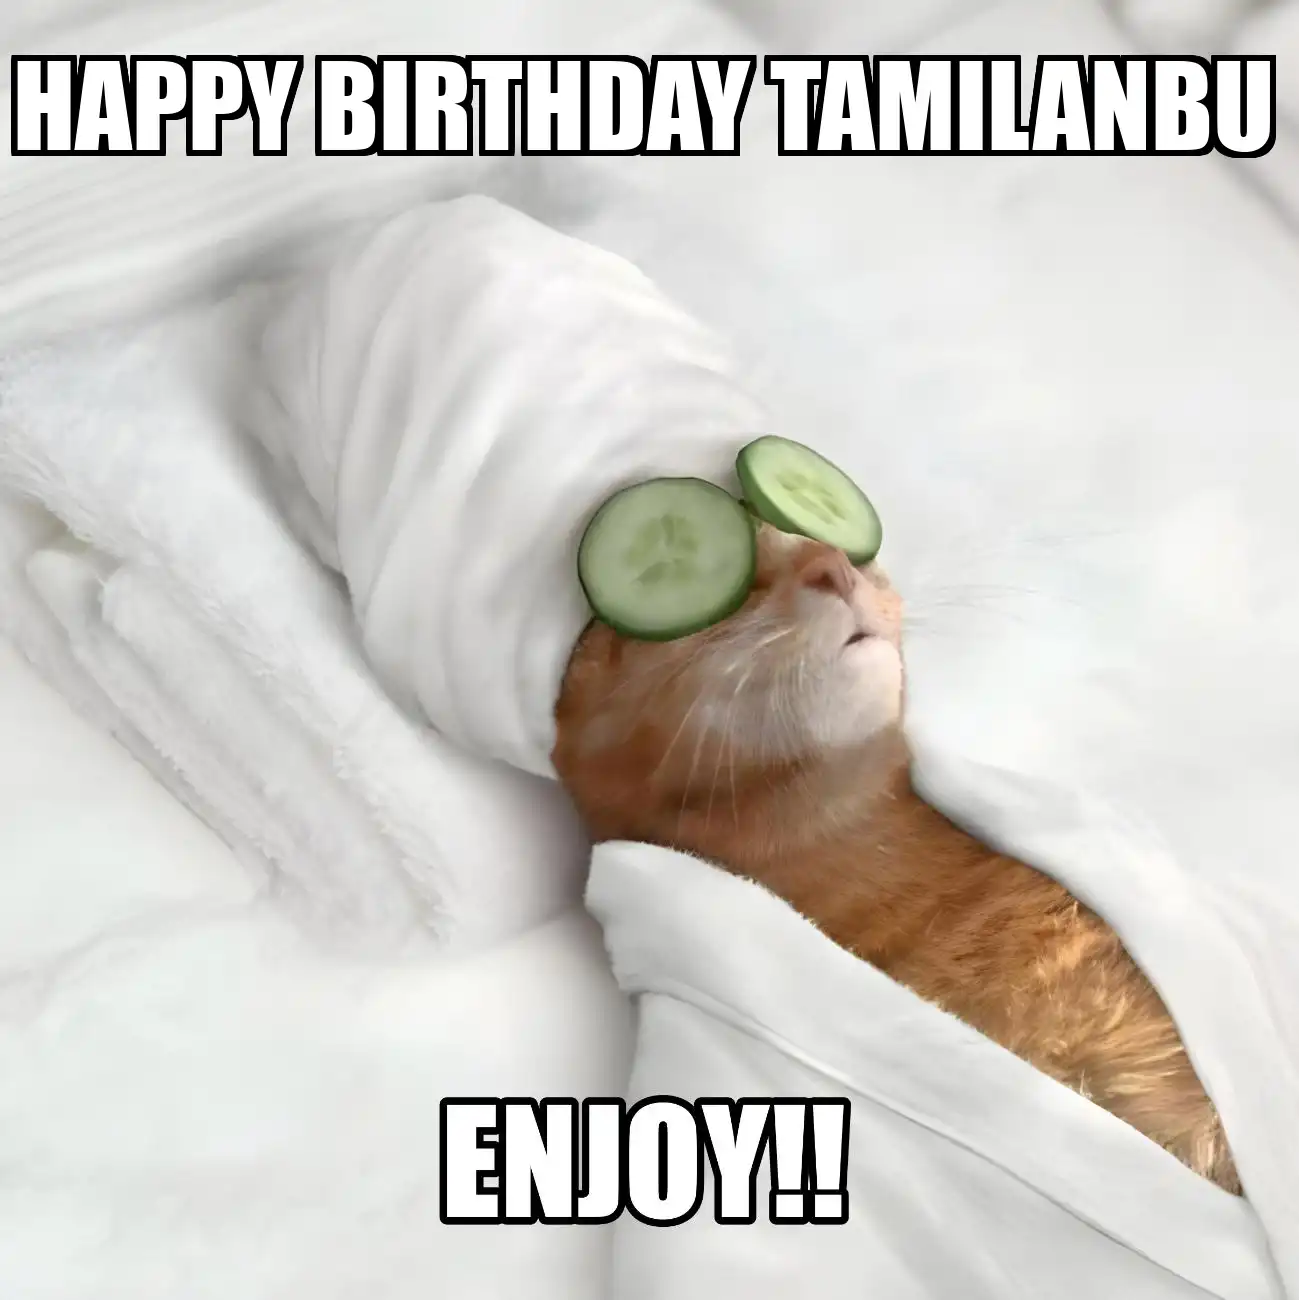 Happy Birthday Tamilanbu Enjoy Cat Meme